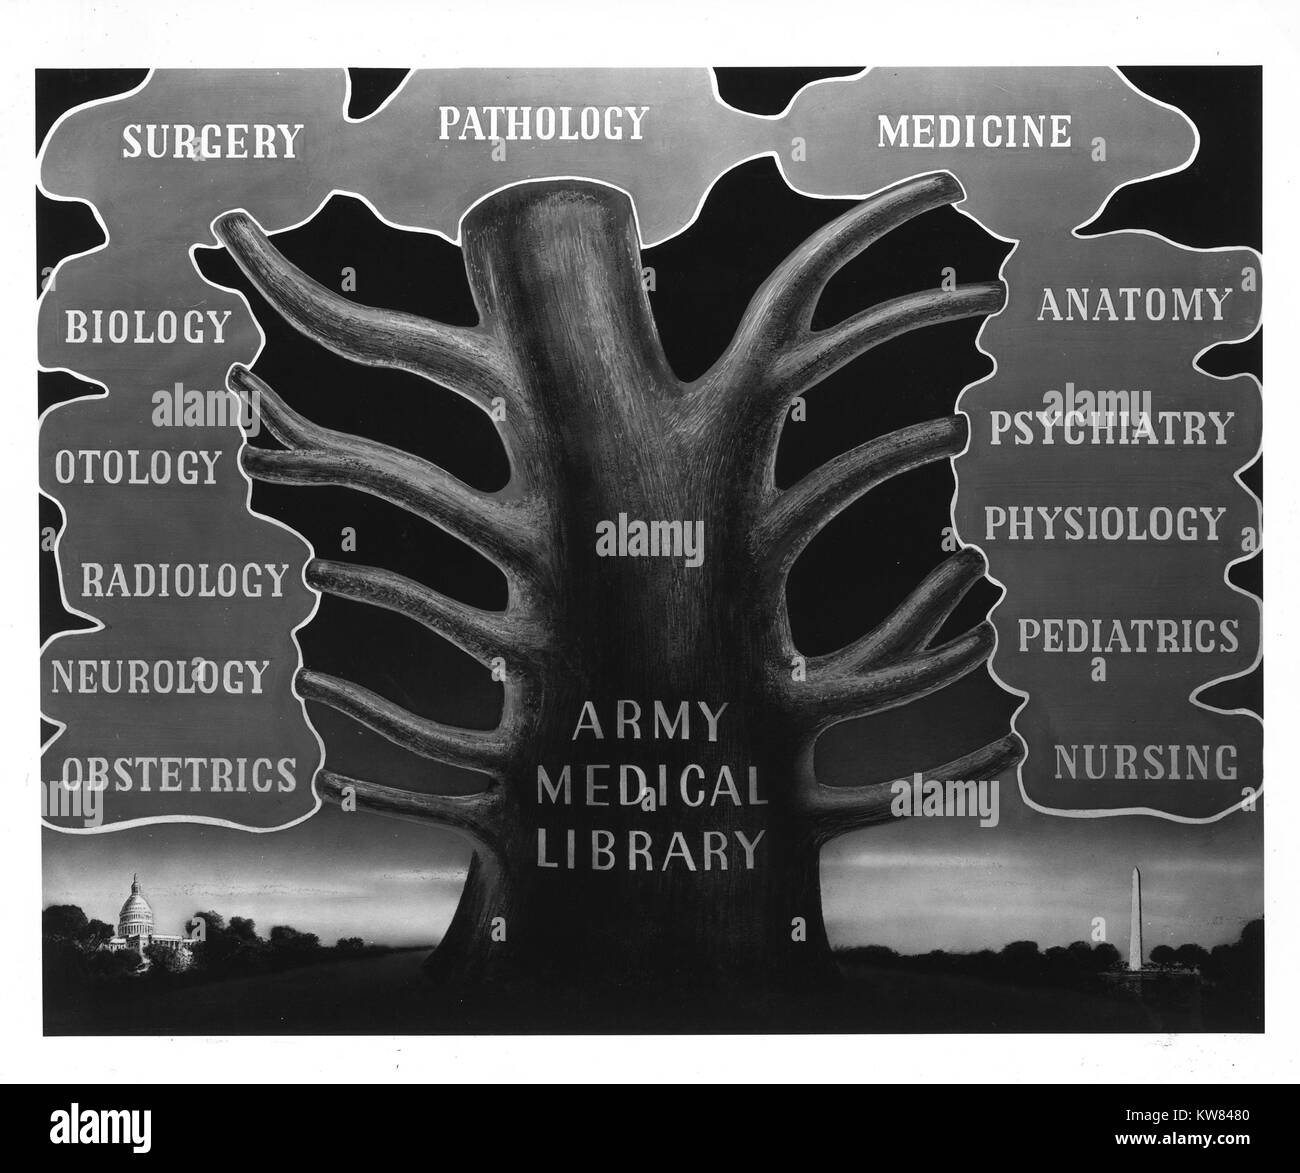 L'esercito biblioteca medica come l'albero della conoscenza medica, con rami che rappresentano i principali campi raccolti dalla biblioteca; Washington, Distretto di Columbia, 1945. Foto Stock